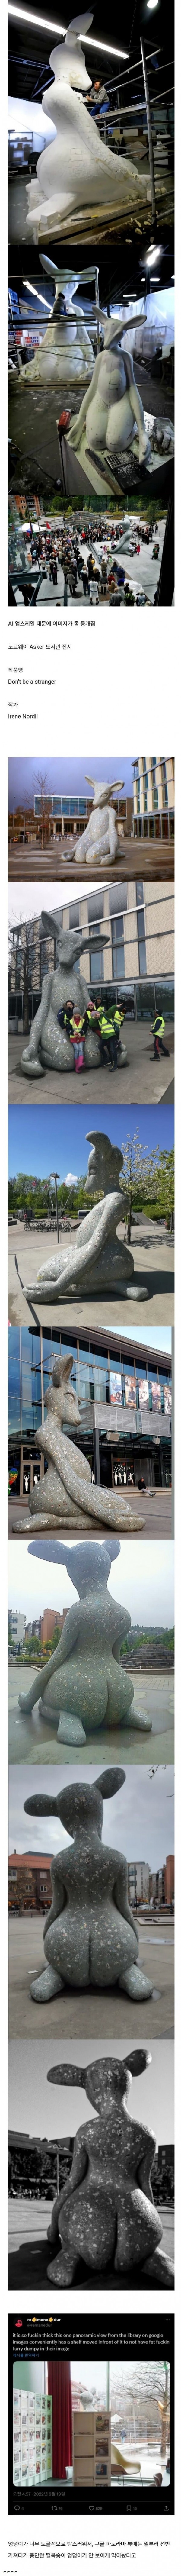 노르웨이의 수상한 사슴 동상